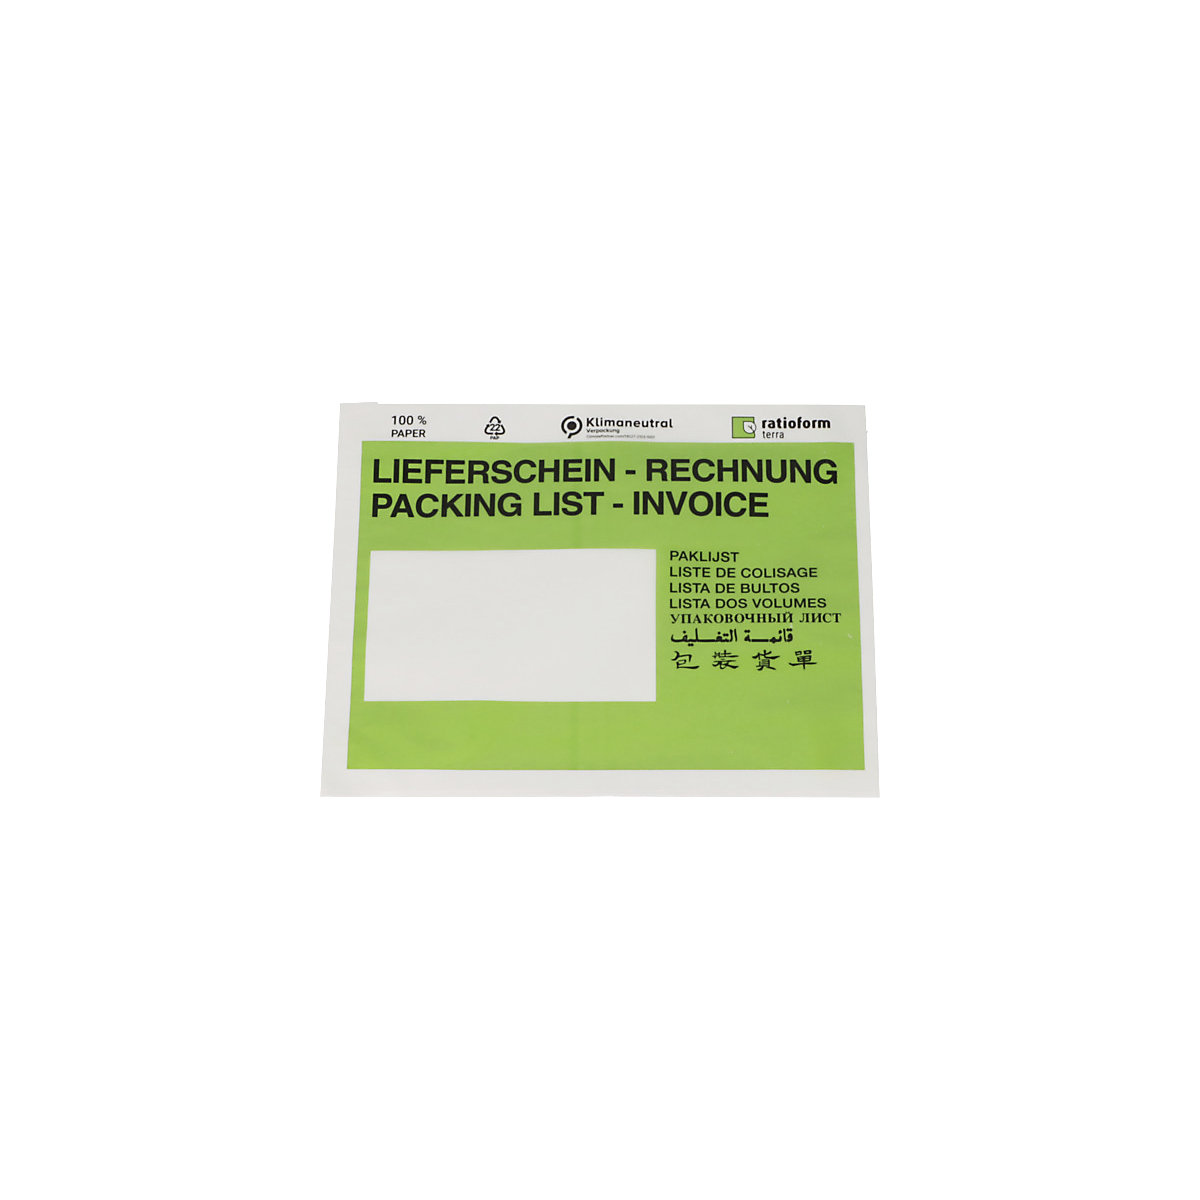 Dokumententaschen aus Papier terra, Aufdruck Lieferschein – Rechnung, VE 1000 Stk, LxB 175 x 131 mm, grün-5